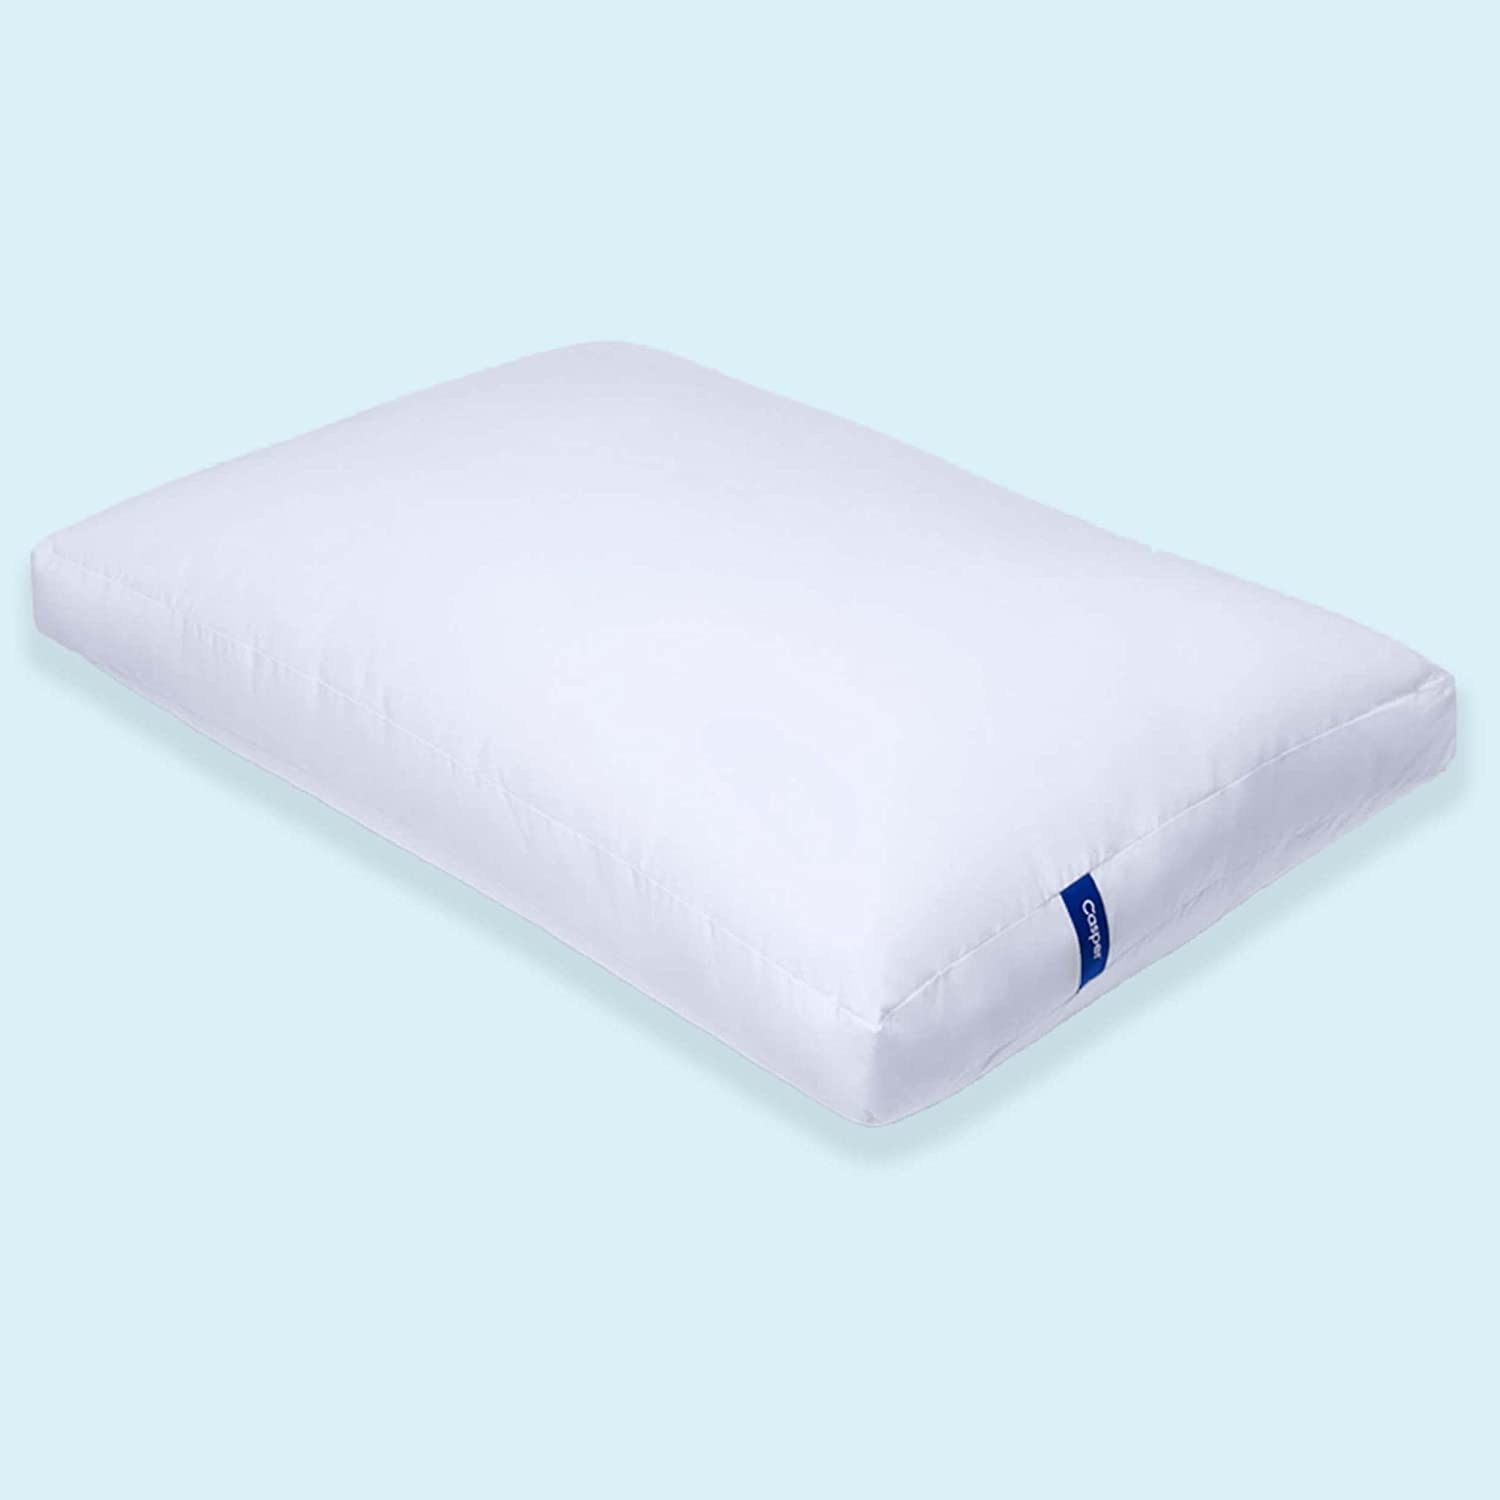 casper pillow on blue background